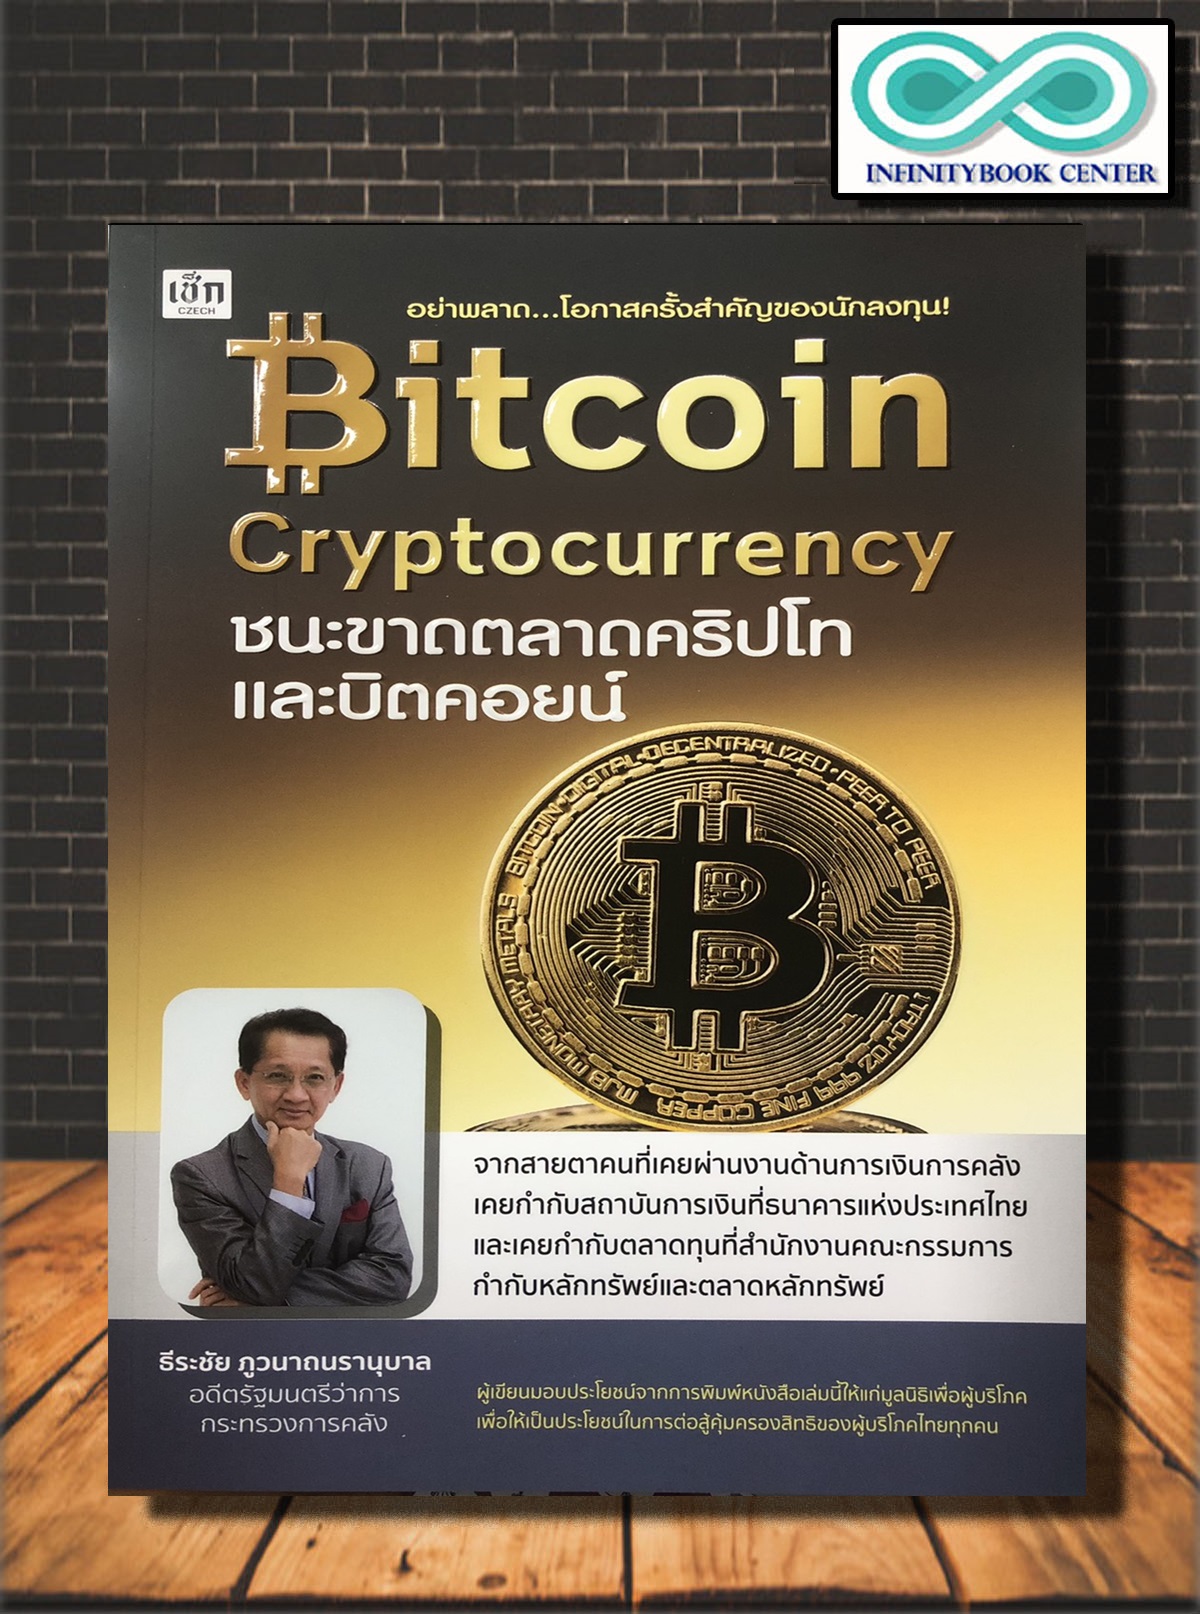 หนังสือการเงิน การลงทุน Bitcoin Cryptocurrency ชนะขาดตลาดคริปโทและบิตคอยน์  (Infinitybook Center) | Lazada.Co.Th